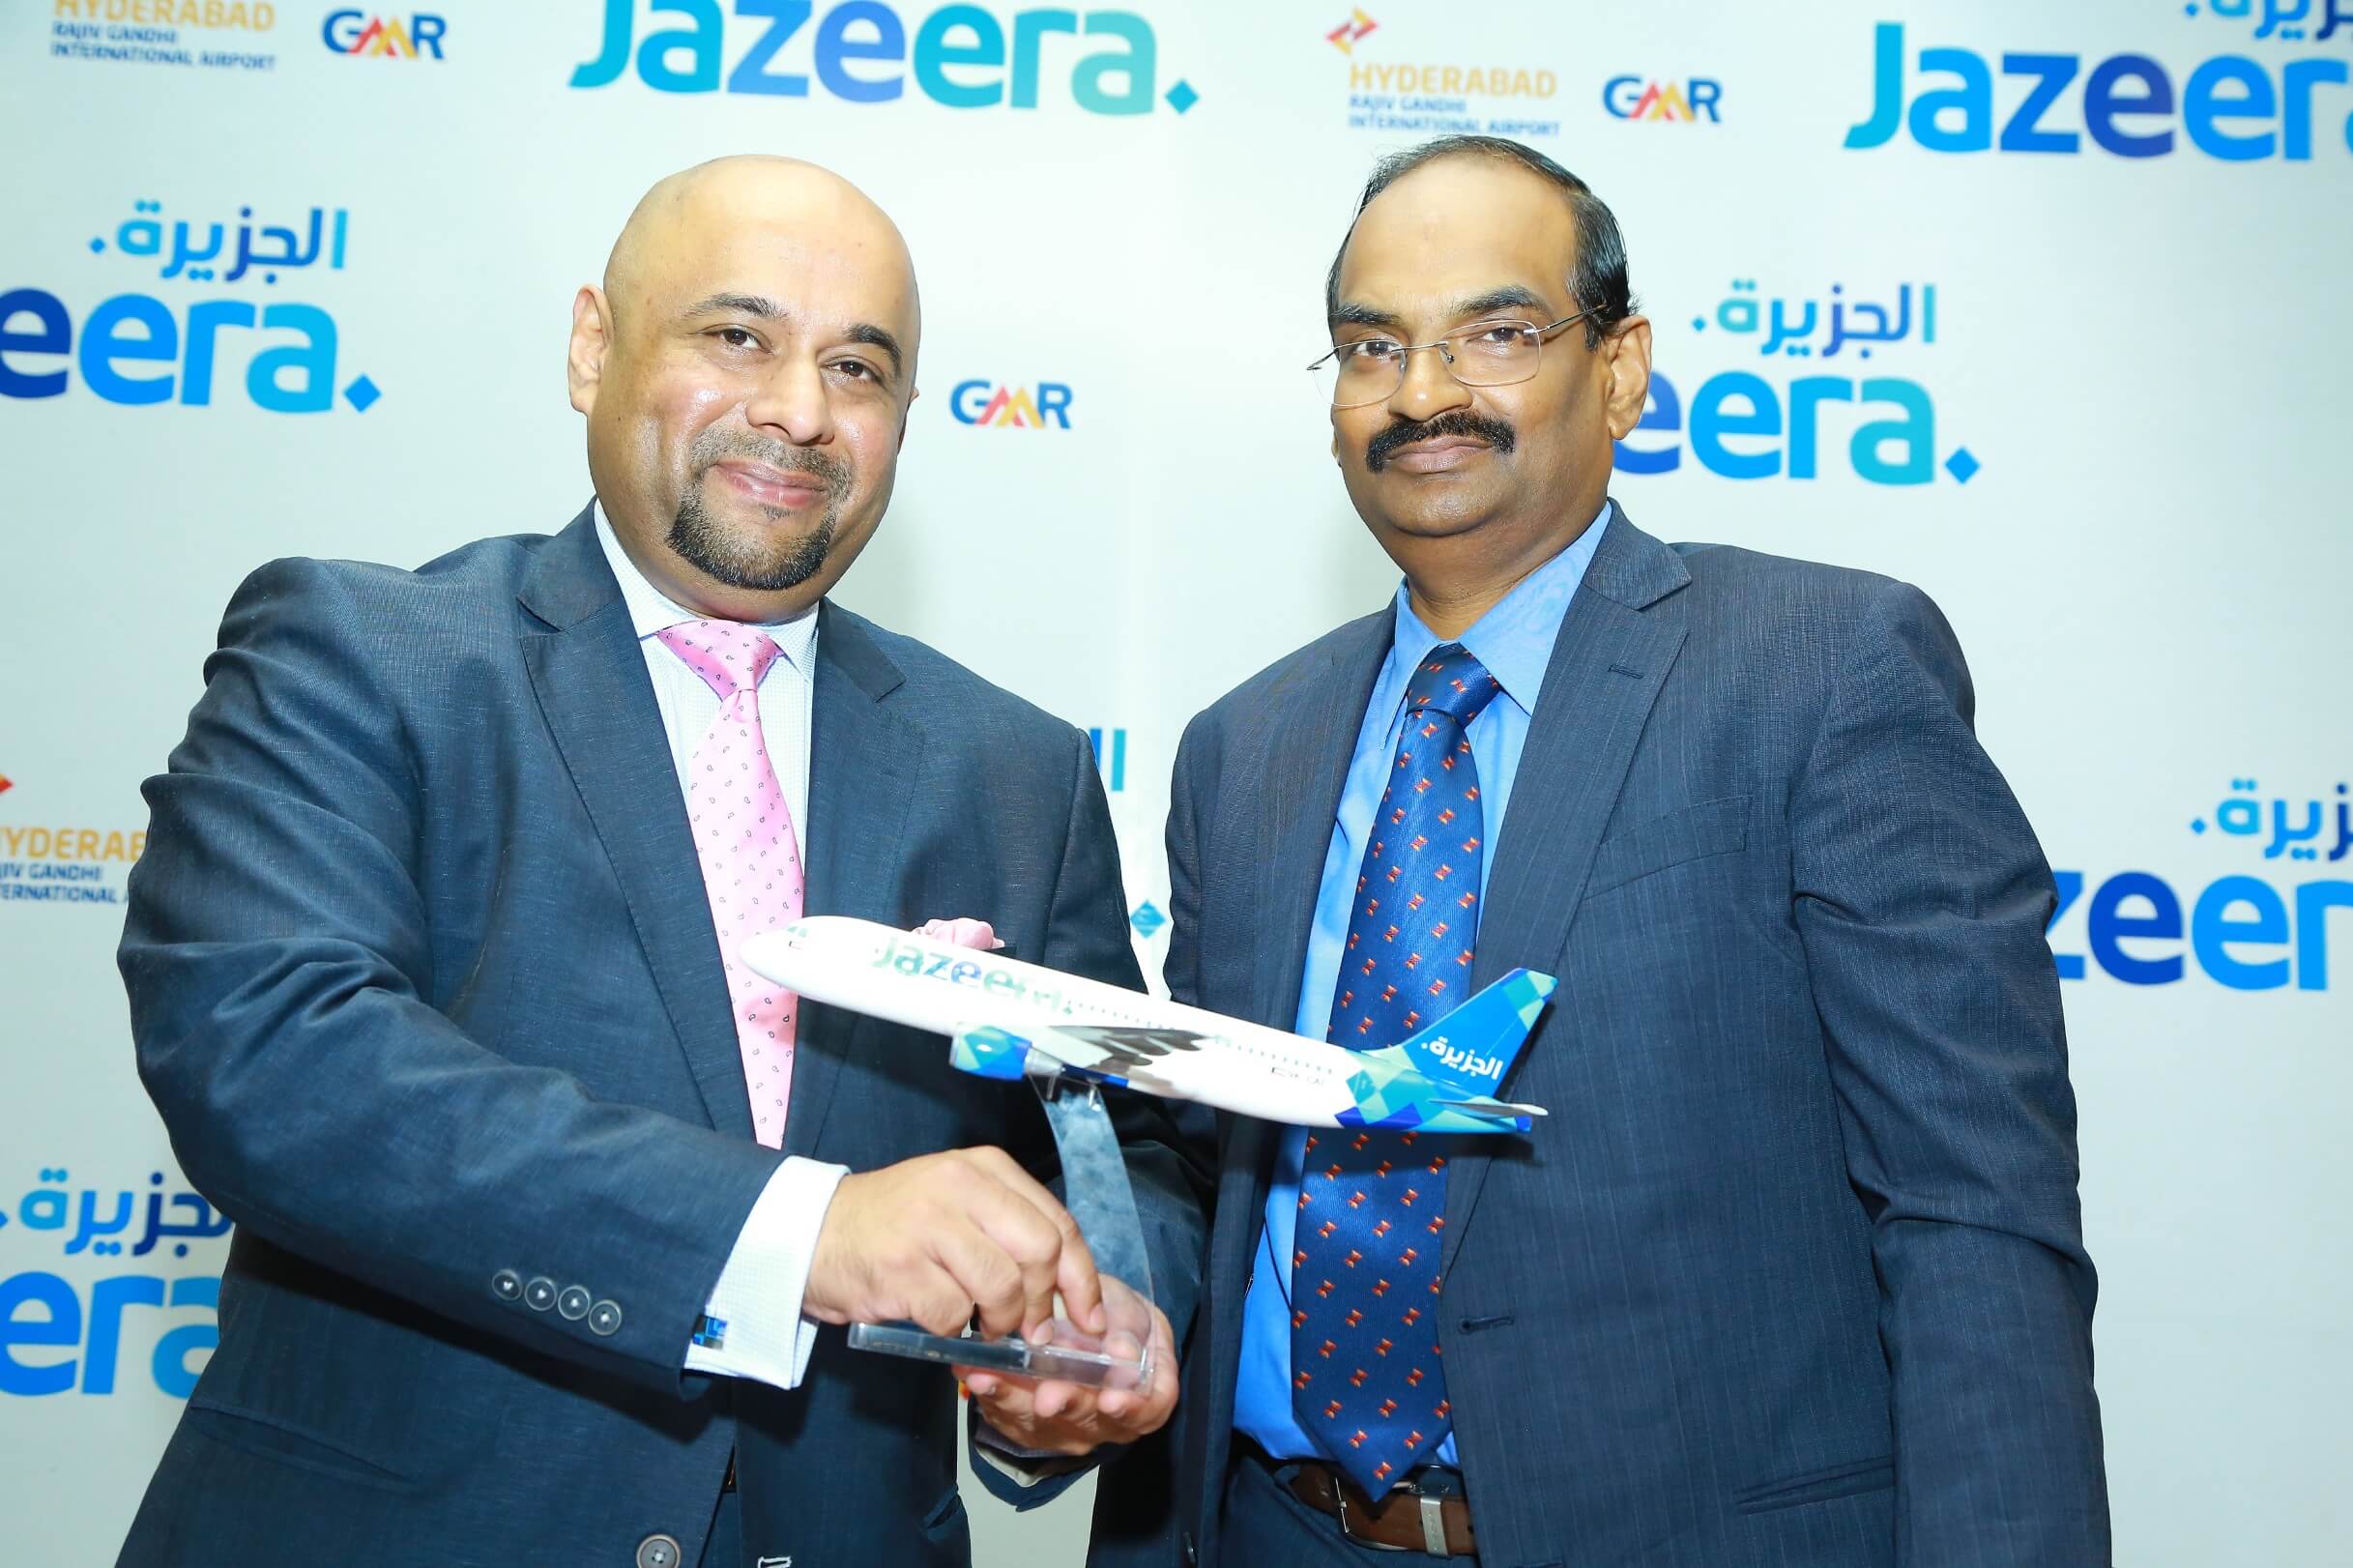 Kuwait’s Jazeera Airways - Daily Flights to Hyderabad